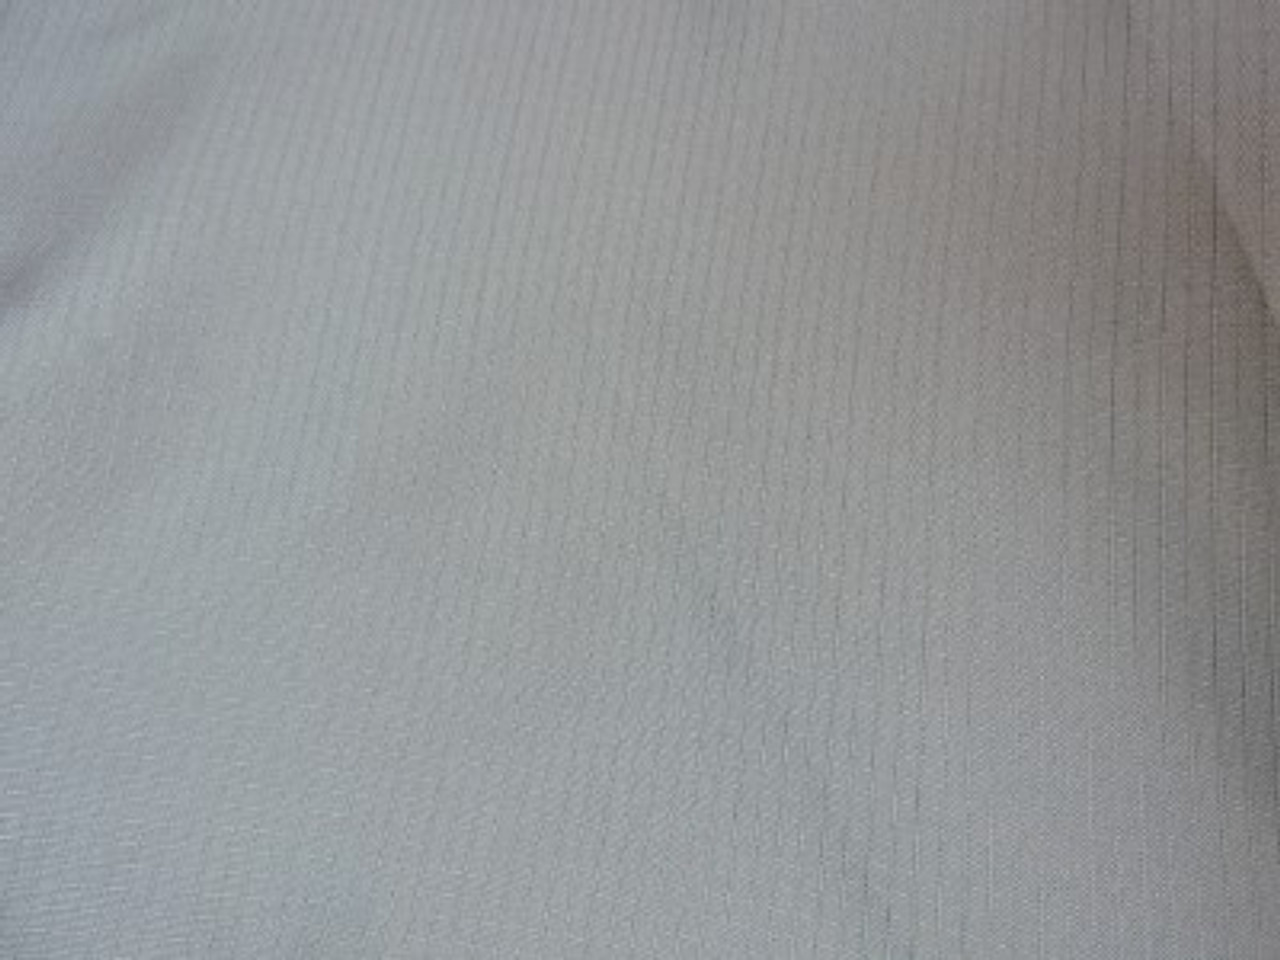 Tissu résistant aux UV "Gridtex" à double couture dans une couleur grise agréable et facile d'entretien.